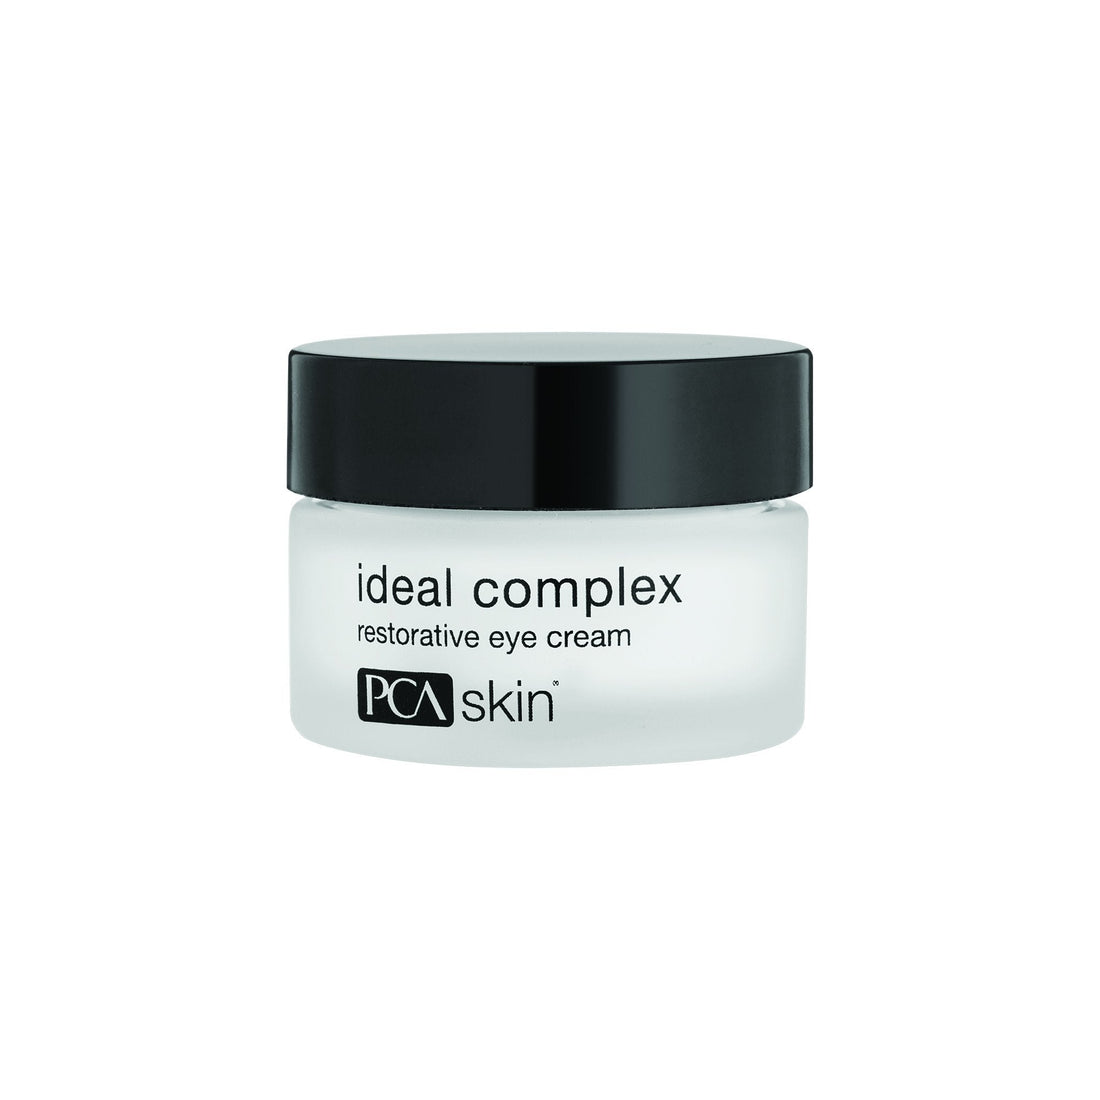 Ideal complex - Restorative Eye Cream 14g